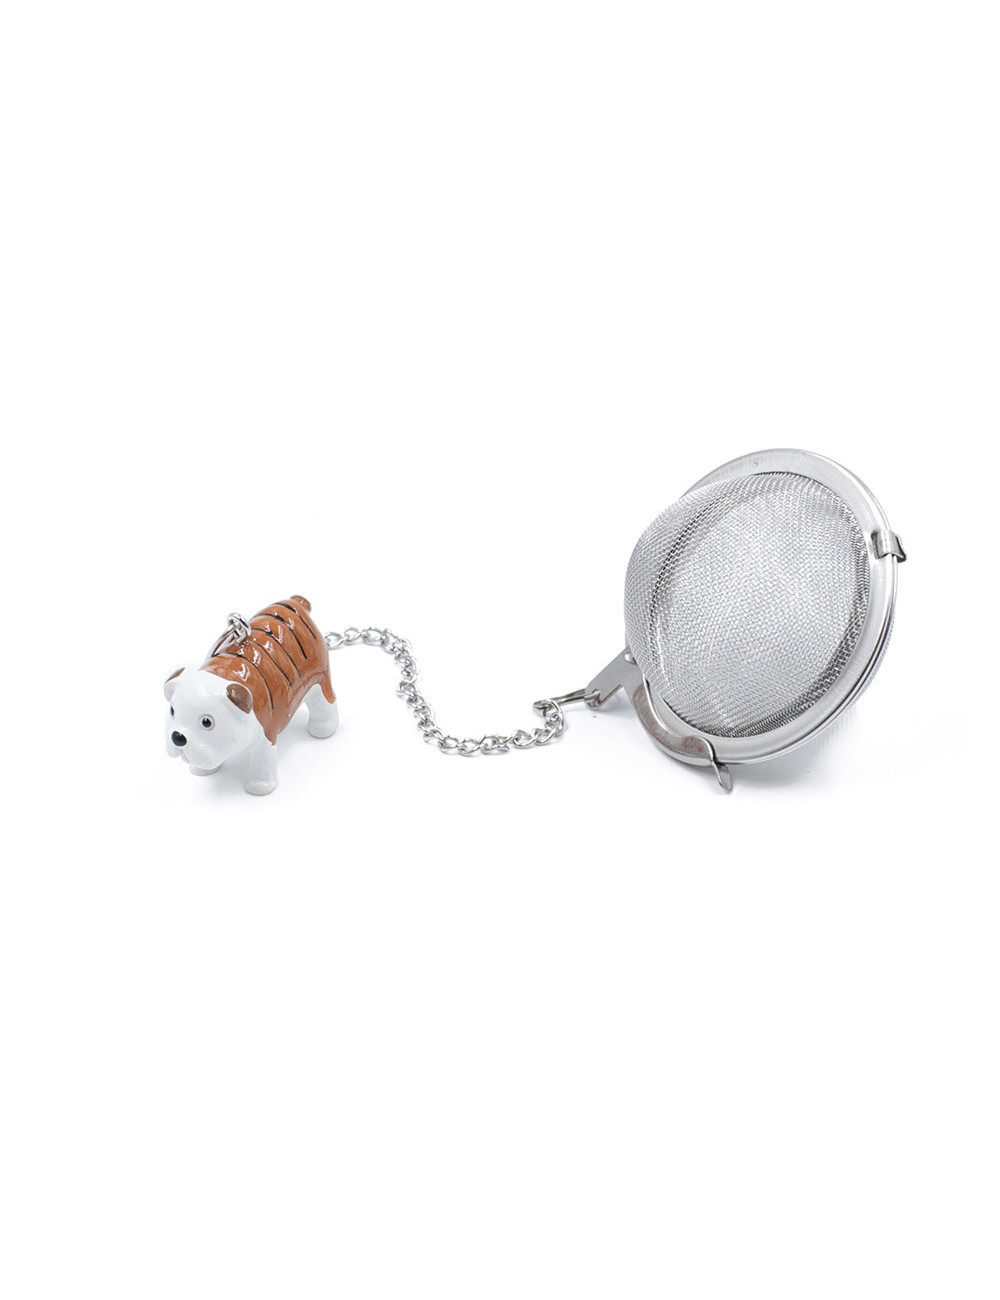 Infusore a sfera Ø 5 cm in acciaio inox con ciondolo colorato - La Pianta del Tè negozio online